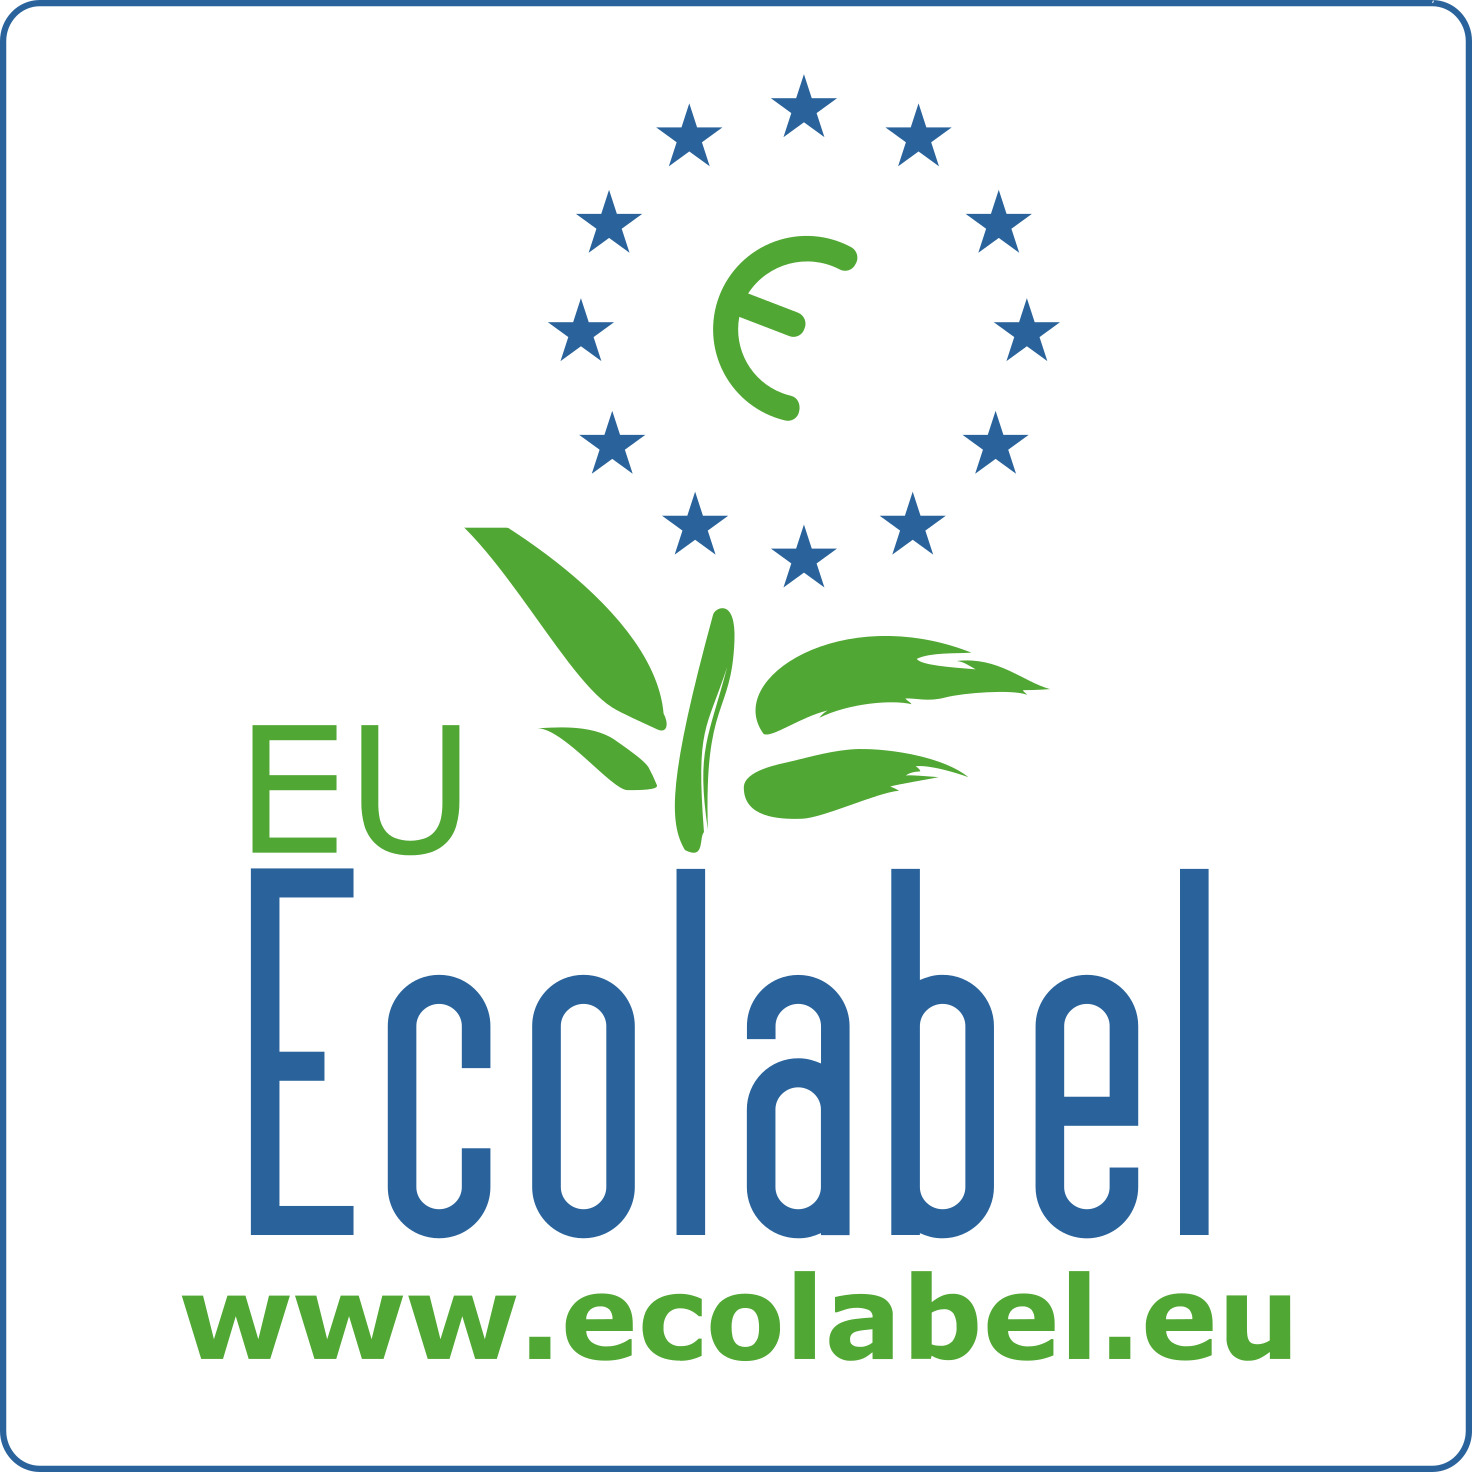 EU-Ecolabel voor vaat en toilet